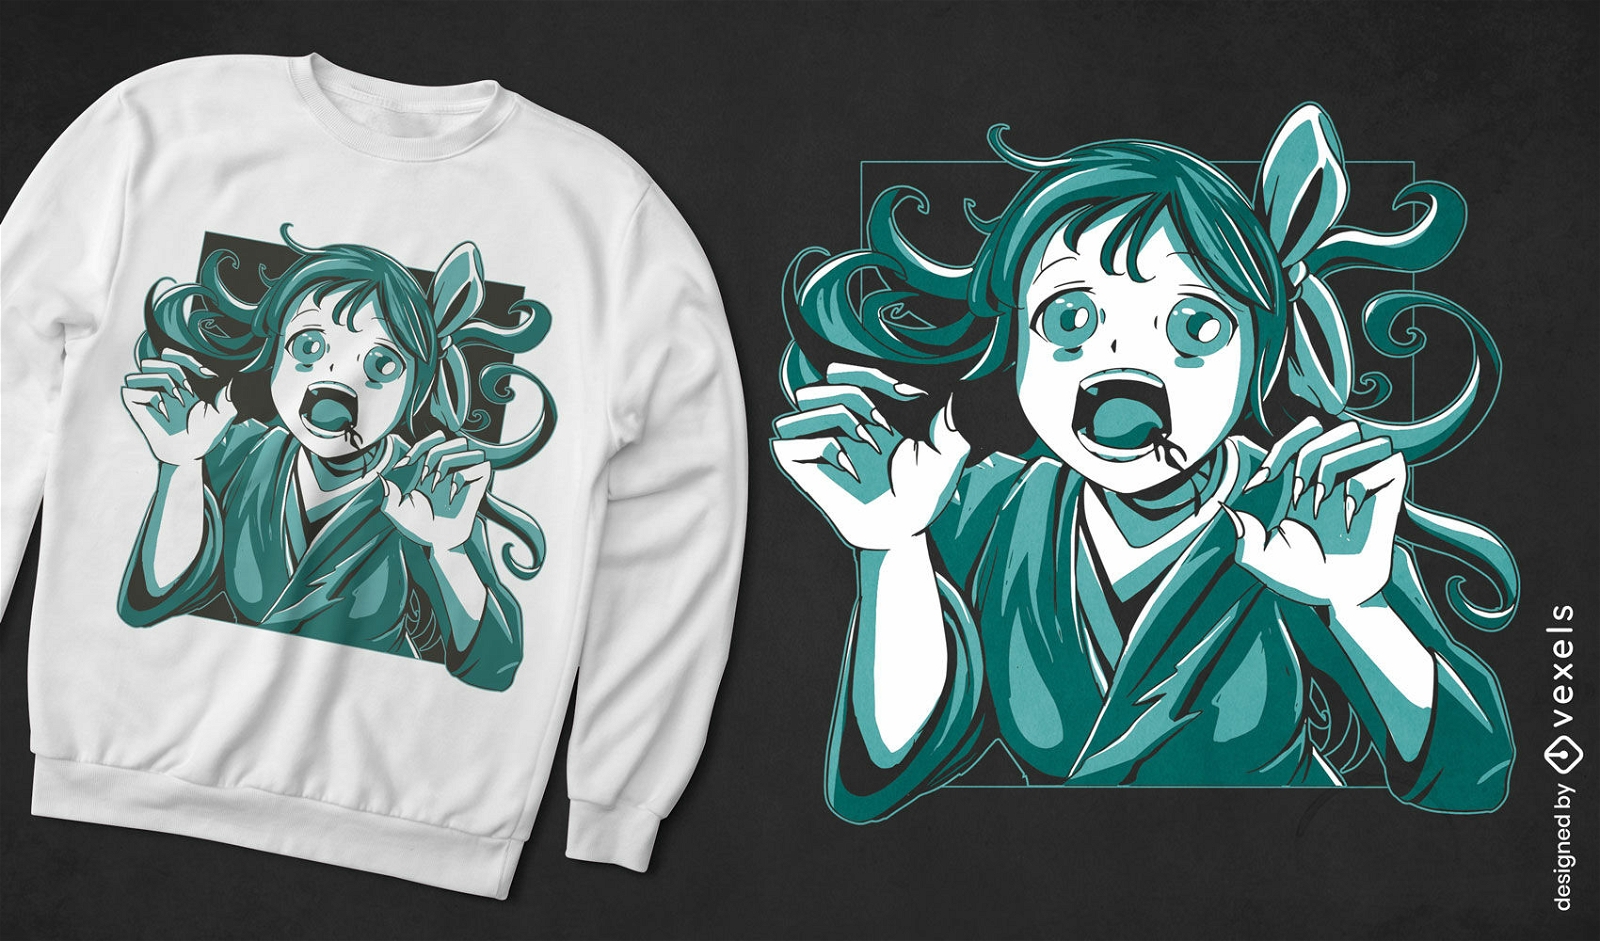 Dise?o lindo de camiseta de chica anime zombie